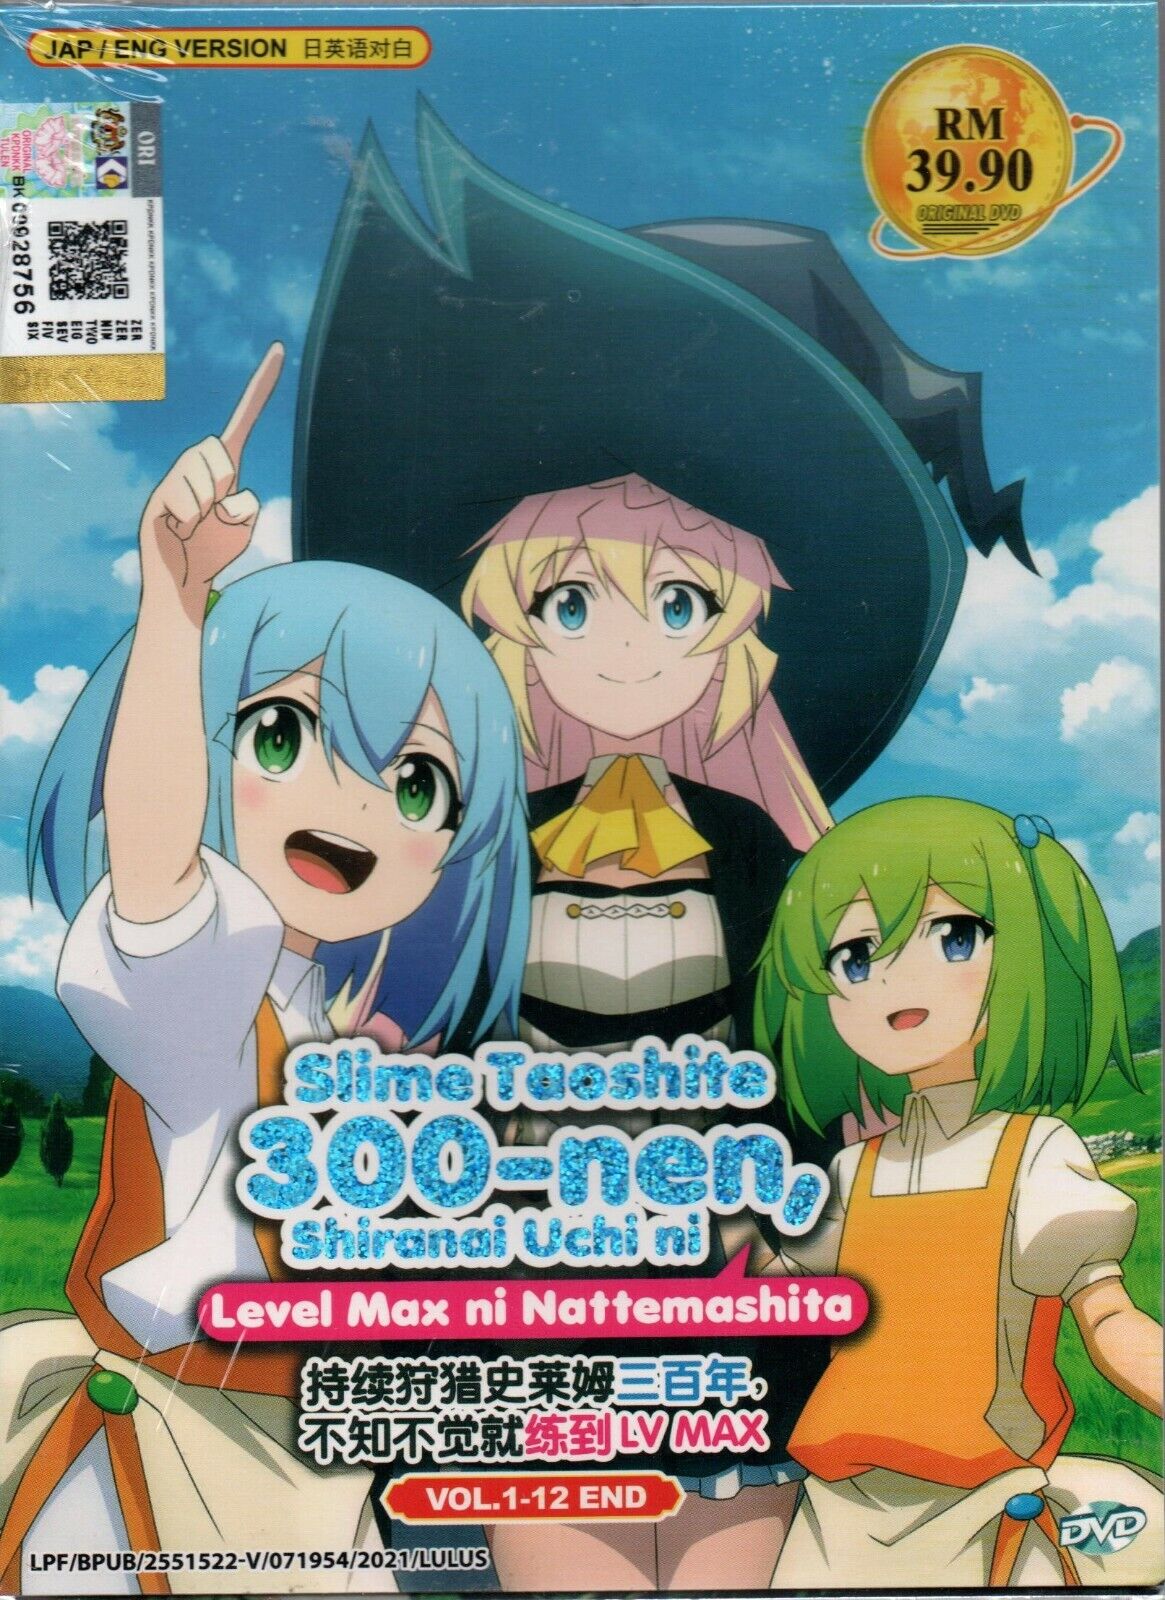 Anime DVD Slime Taoshite 300-nen, Shiranai Uchi ni Level Max ni